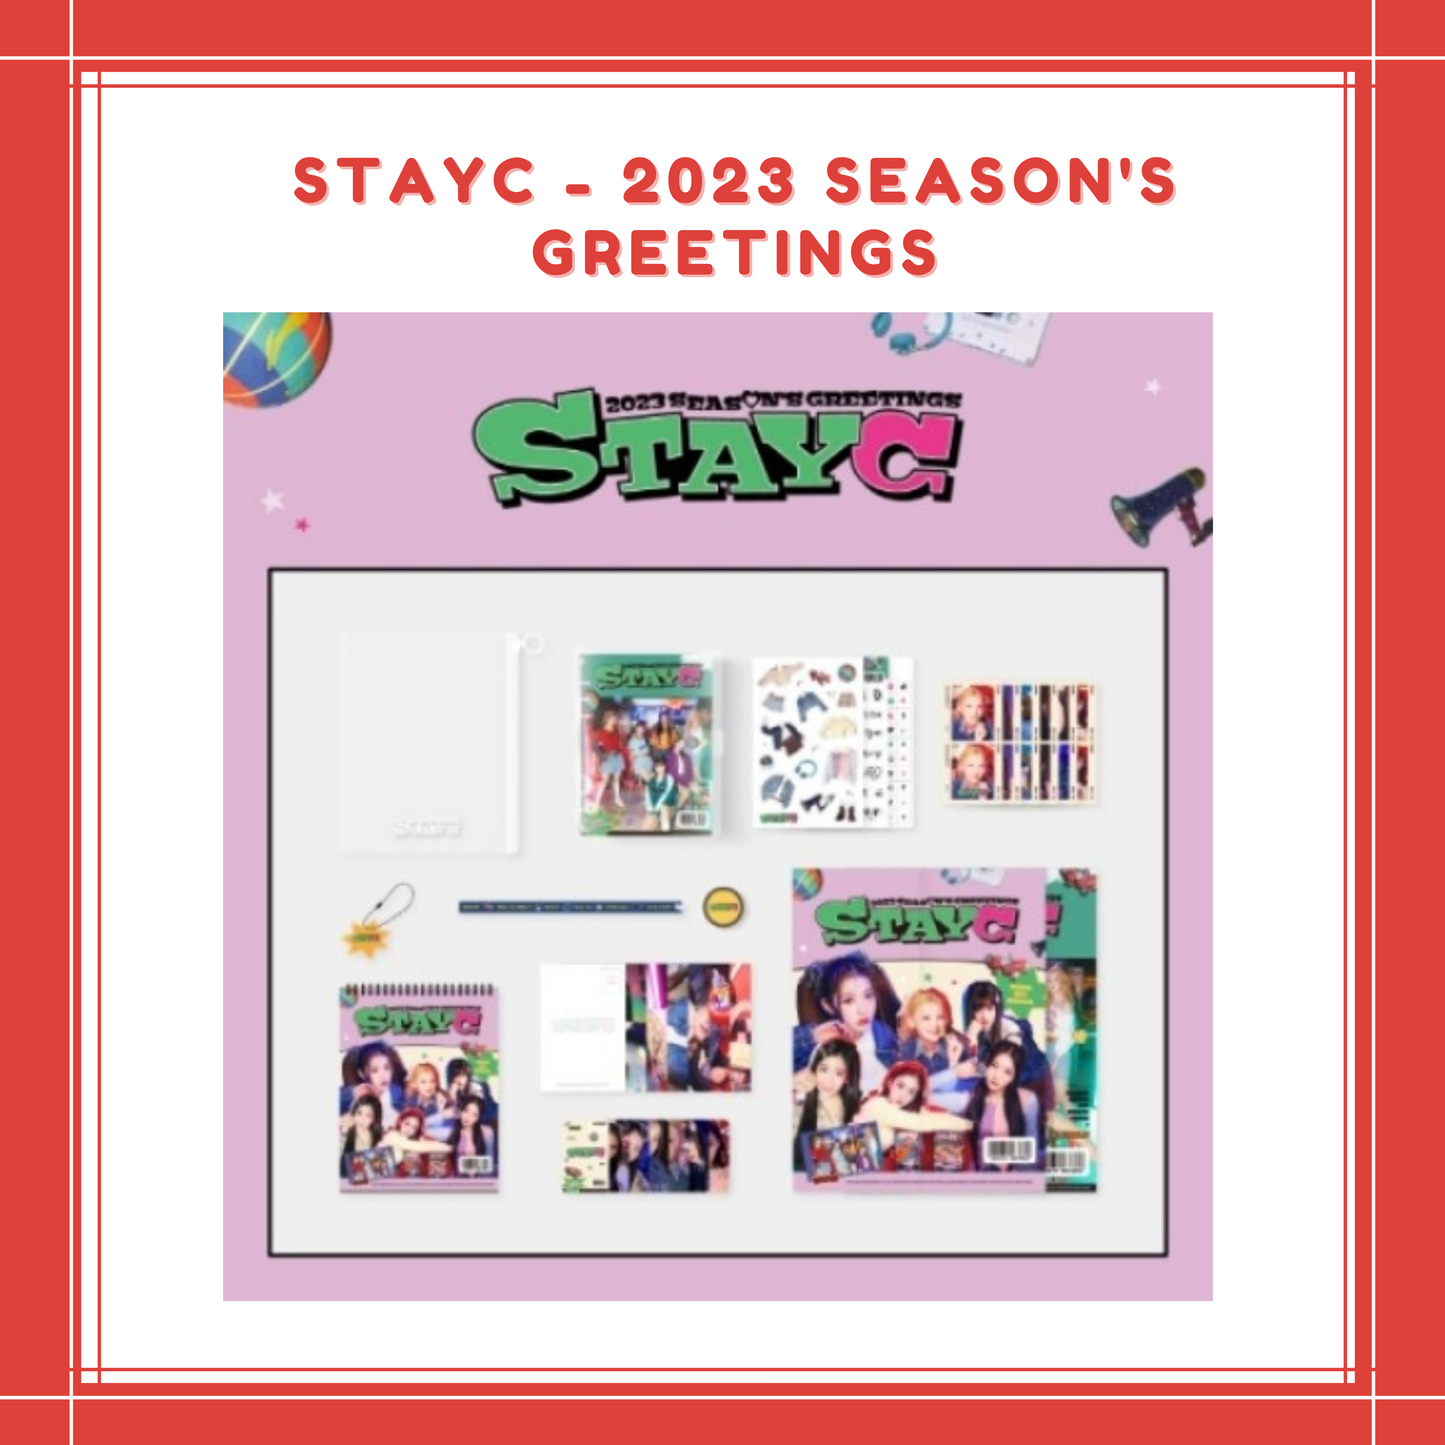 [PREORDER] STAYC - 2023 SEASON'S GREETINGS